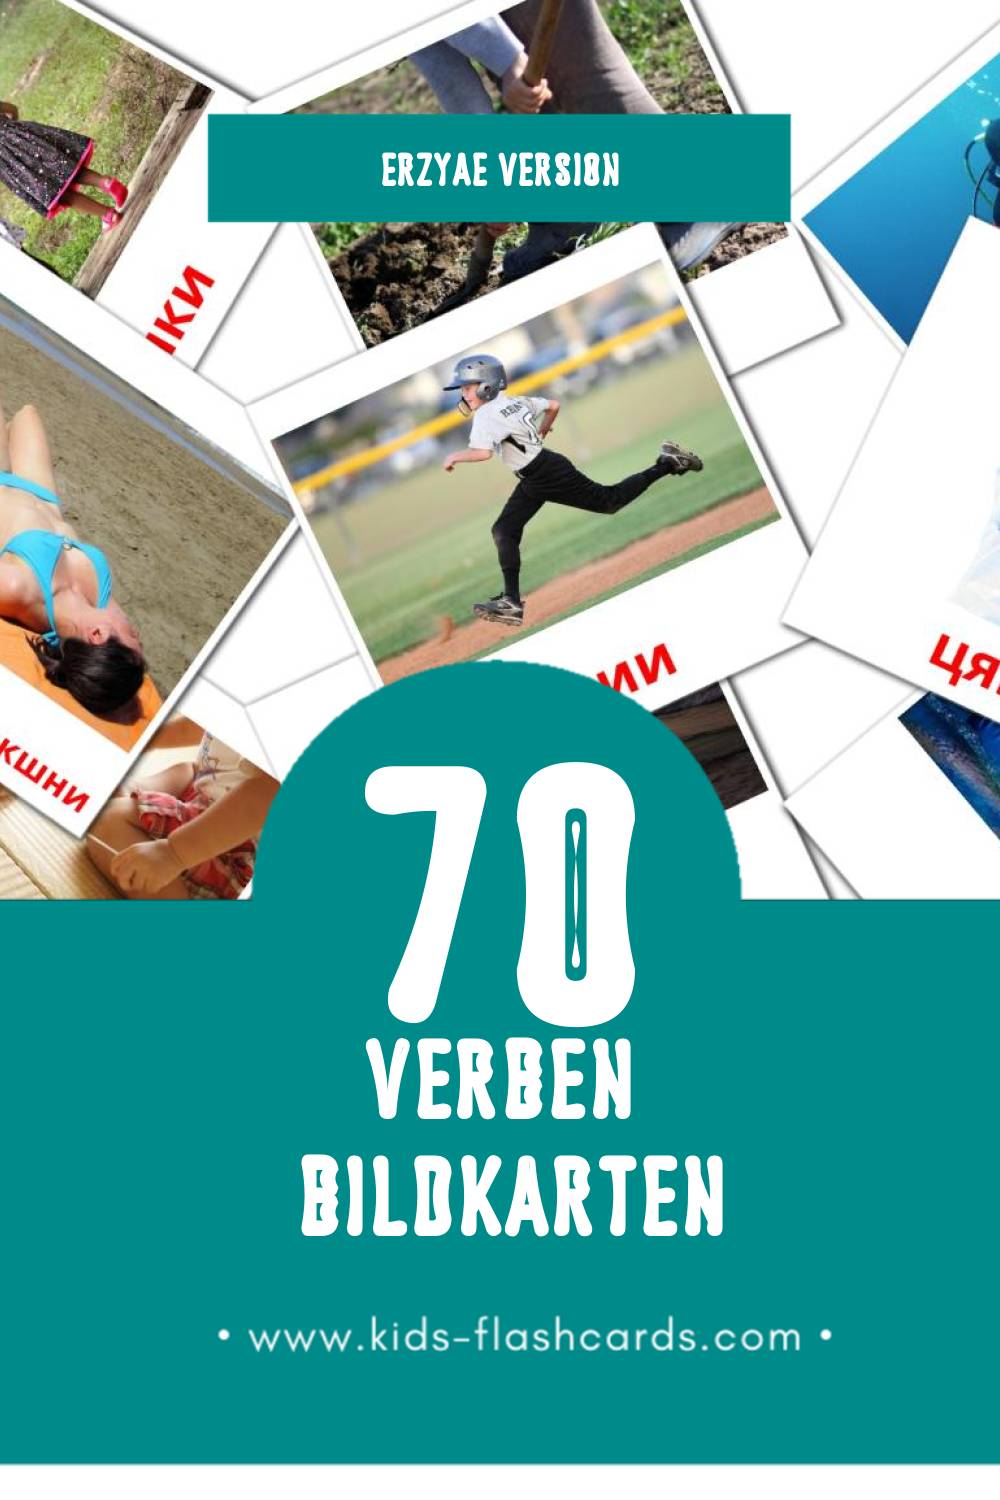 Visual Теемавалт Flashcards für Kleinkinder (70 Karten in Erzya)